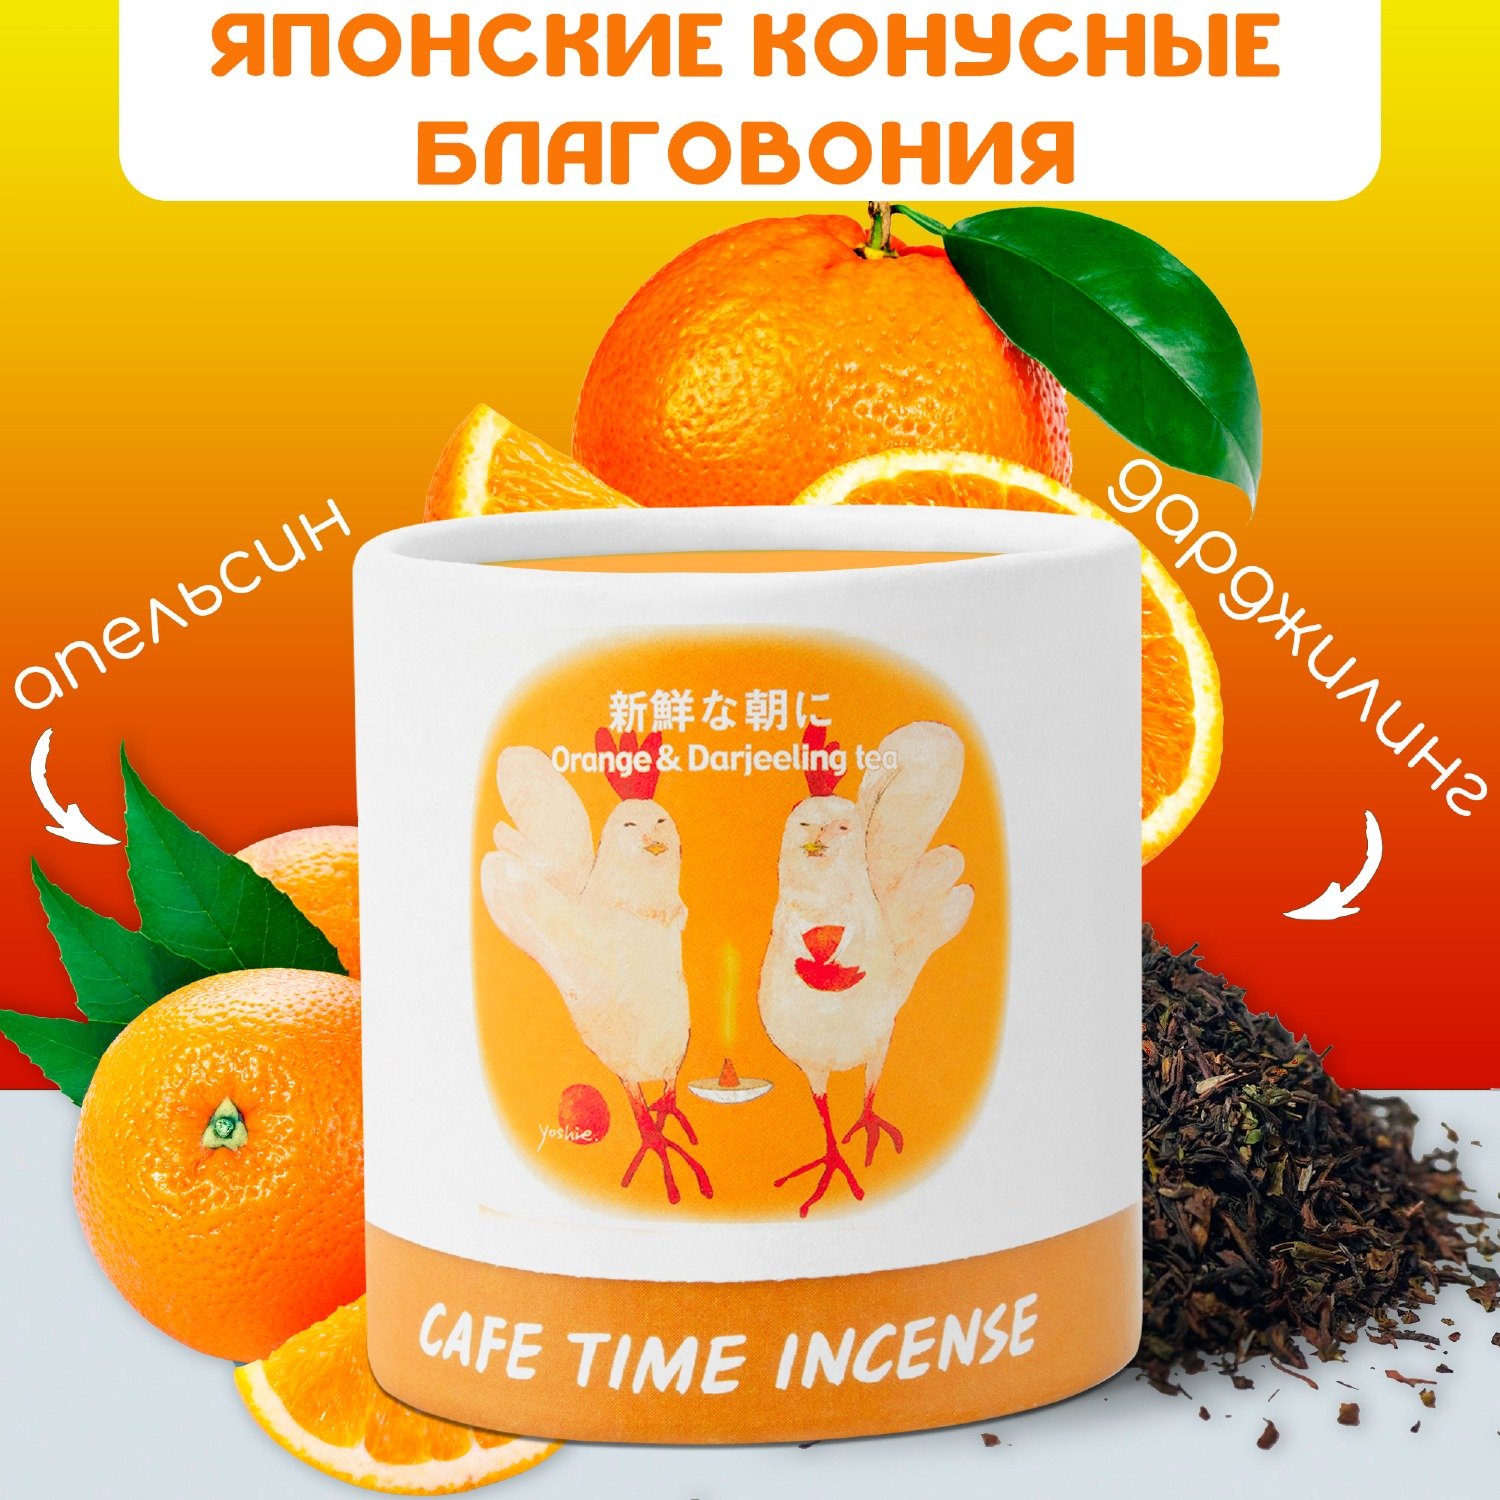 Благовоние CAFE TIME INCENSE — FRESH MORNING (Апельсин и чай дарджилинг) 5+5 конусов. 